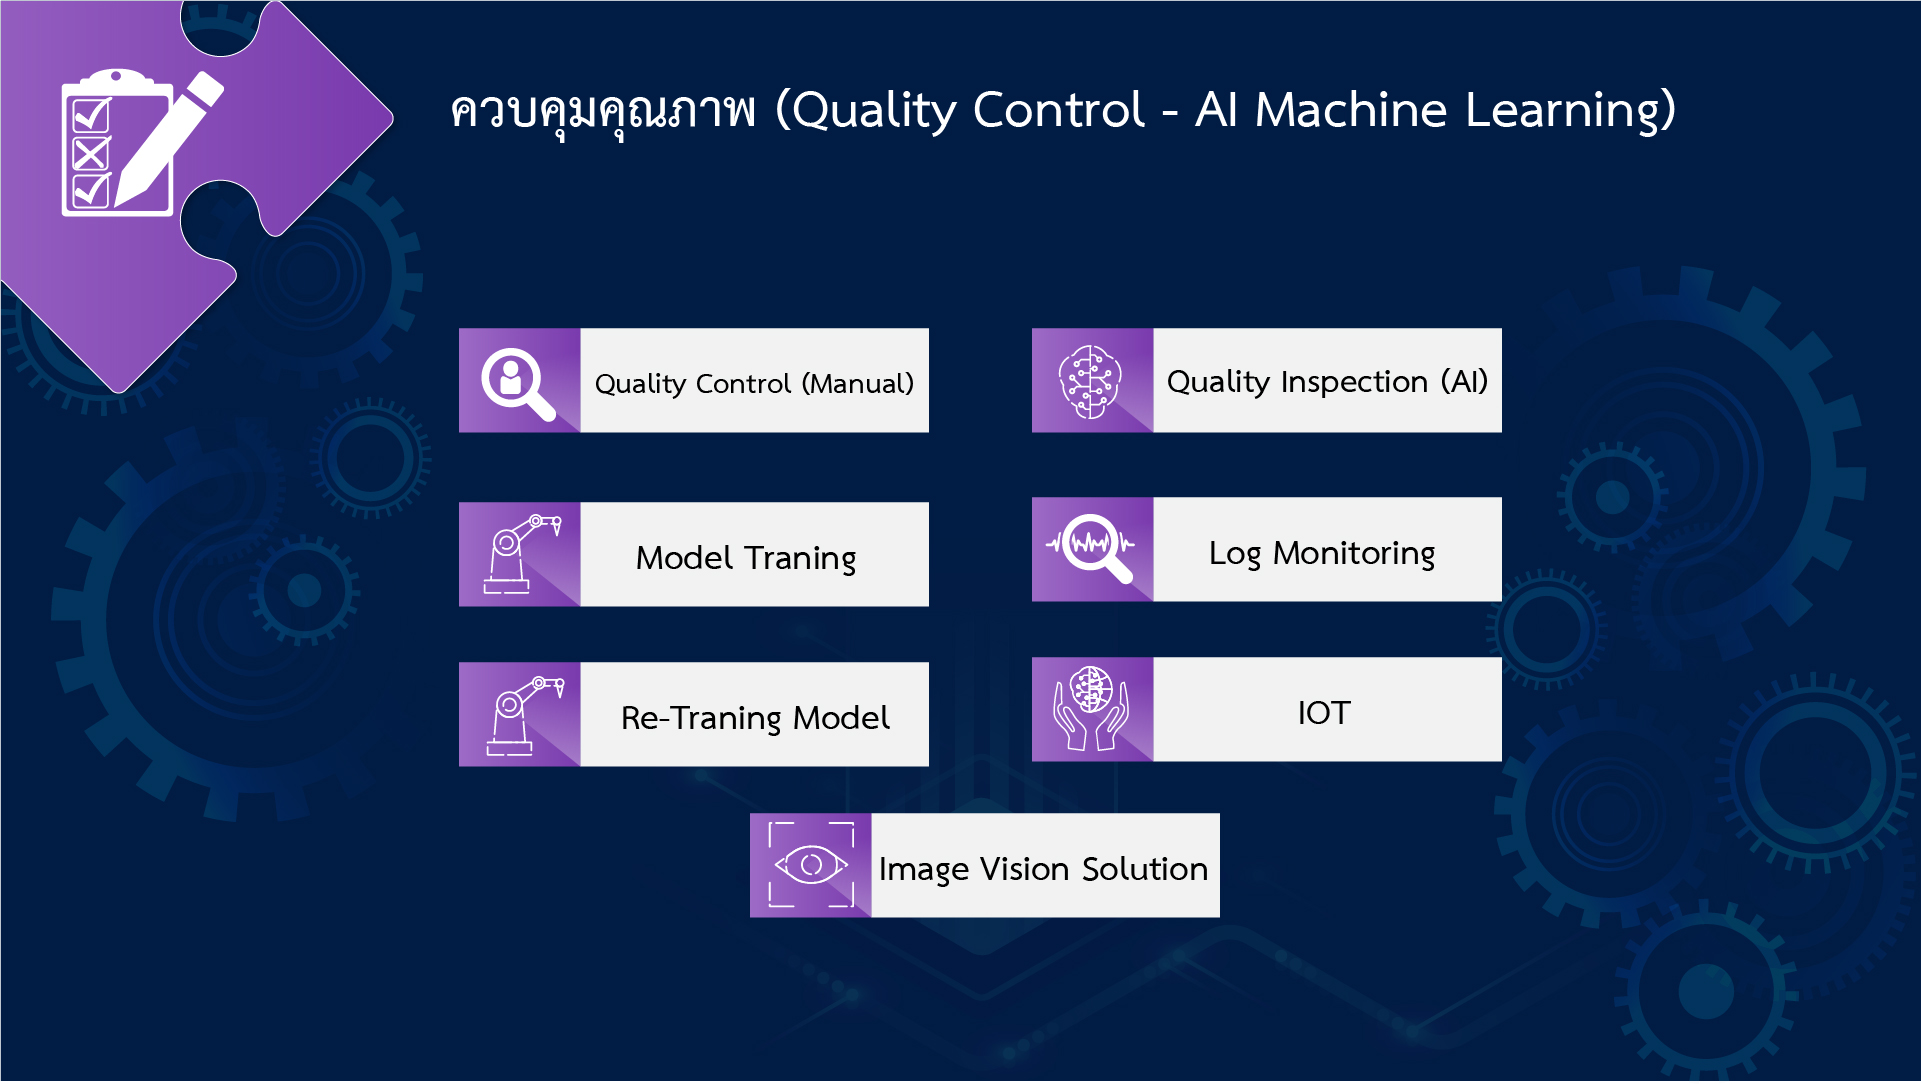 ควบคุมคุณภาพ (Quality Control - AI Machine Learning)